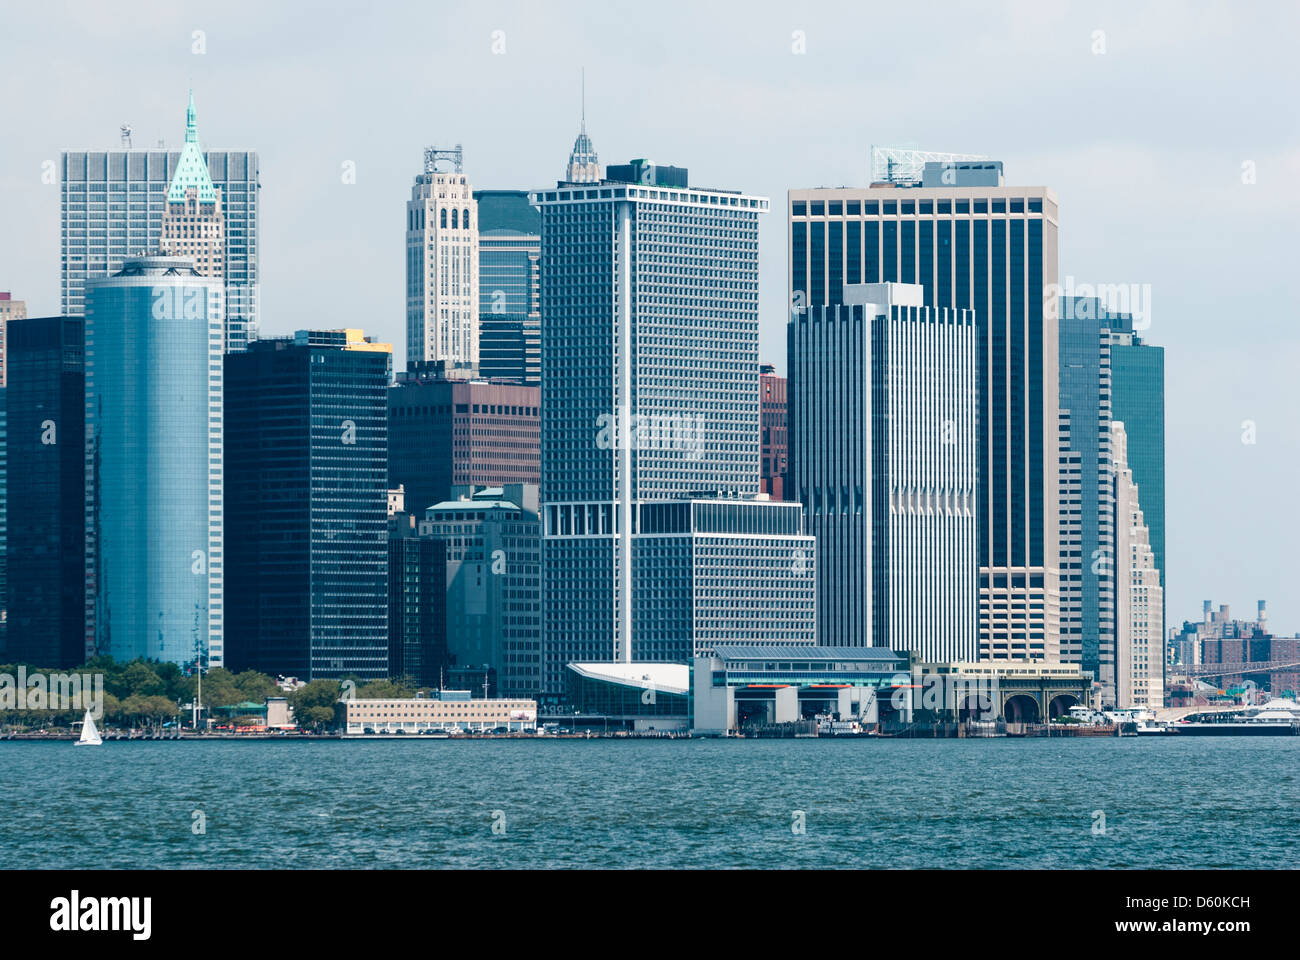 Porta Sud, skyline di New York, East River, New York, Stati Uniti d'America, Stati Uniti d'America - immagine presa dal suolo pubblico Foto Stock